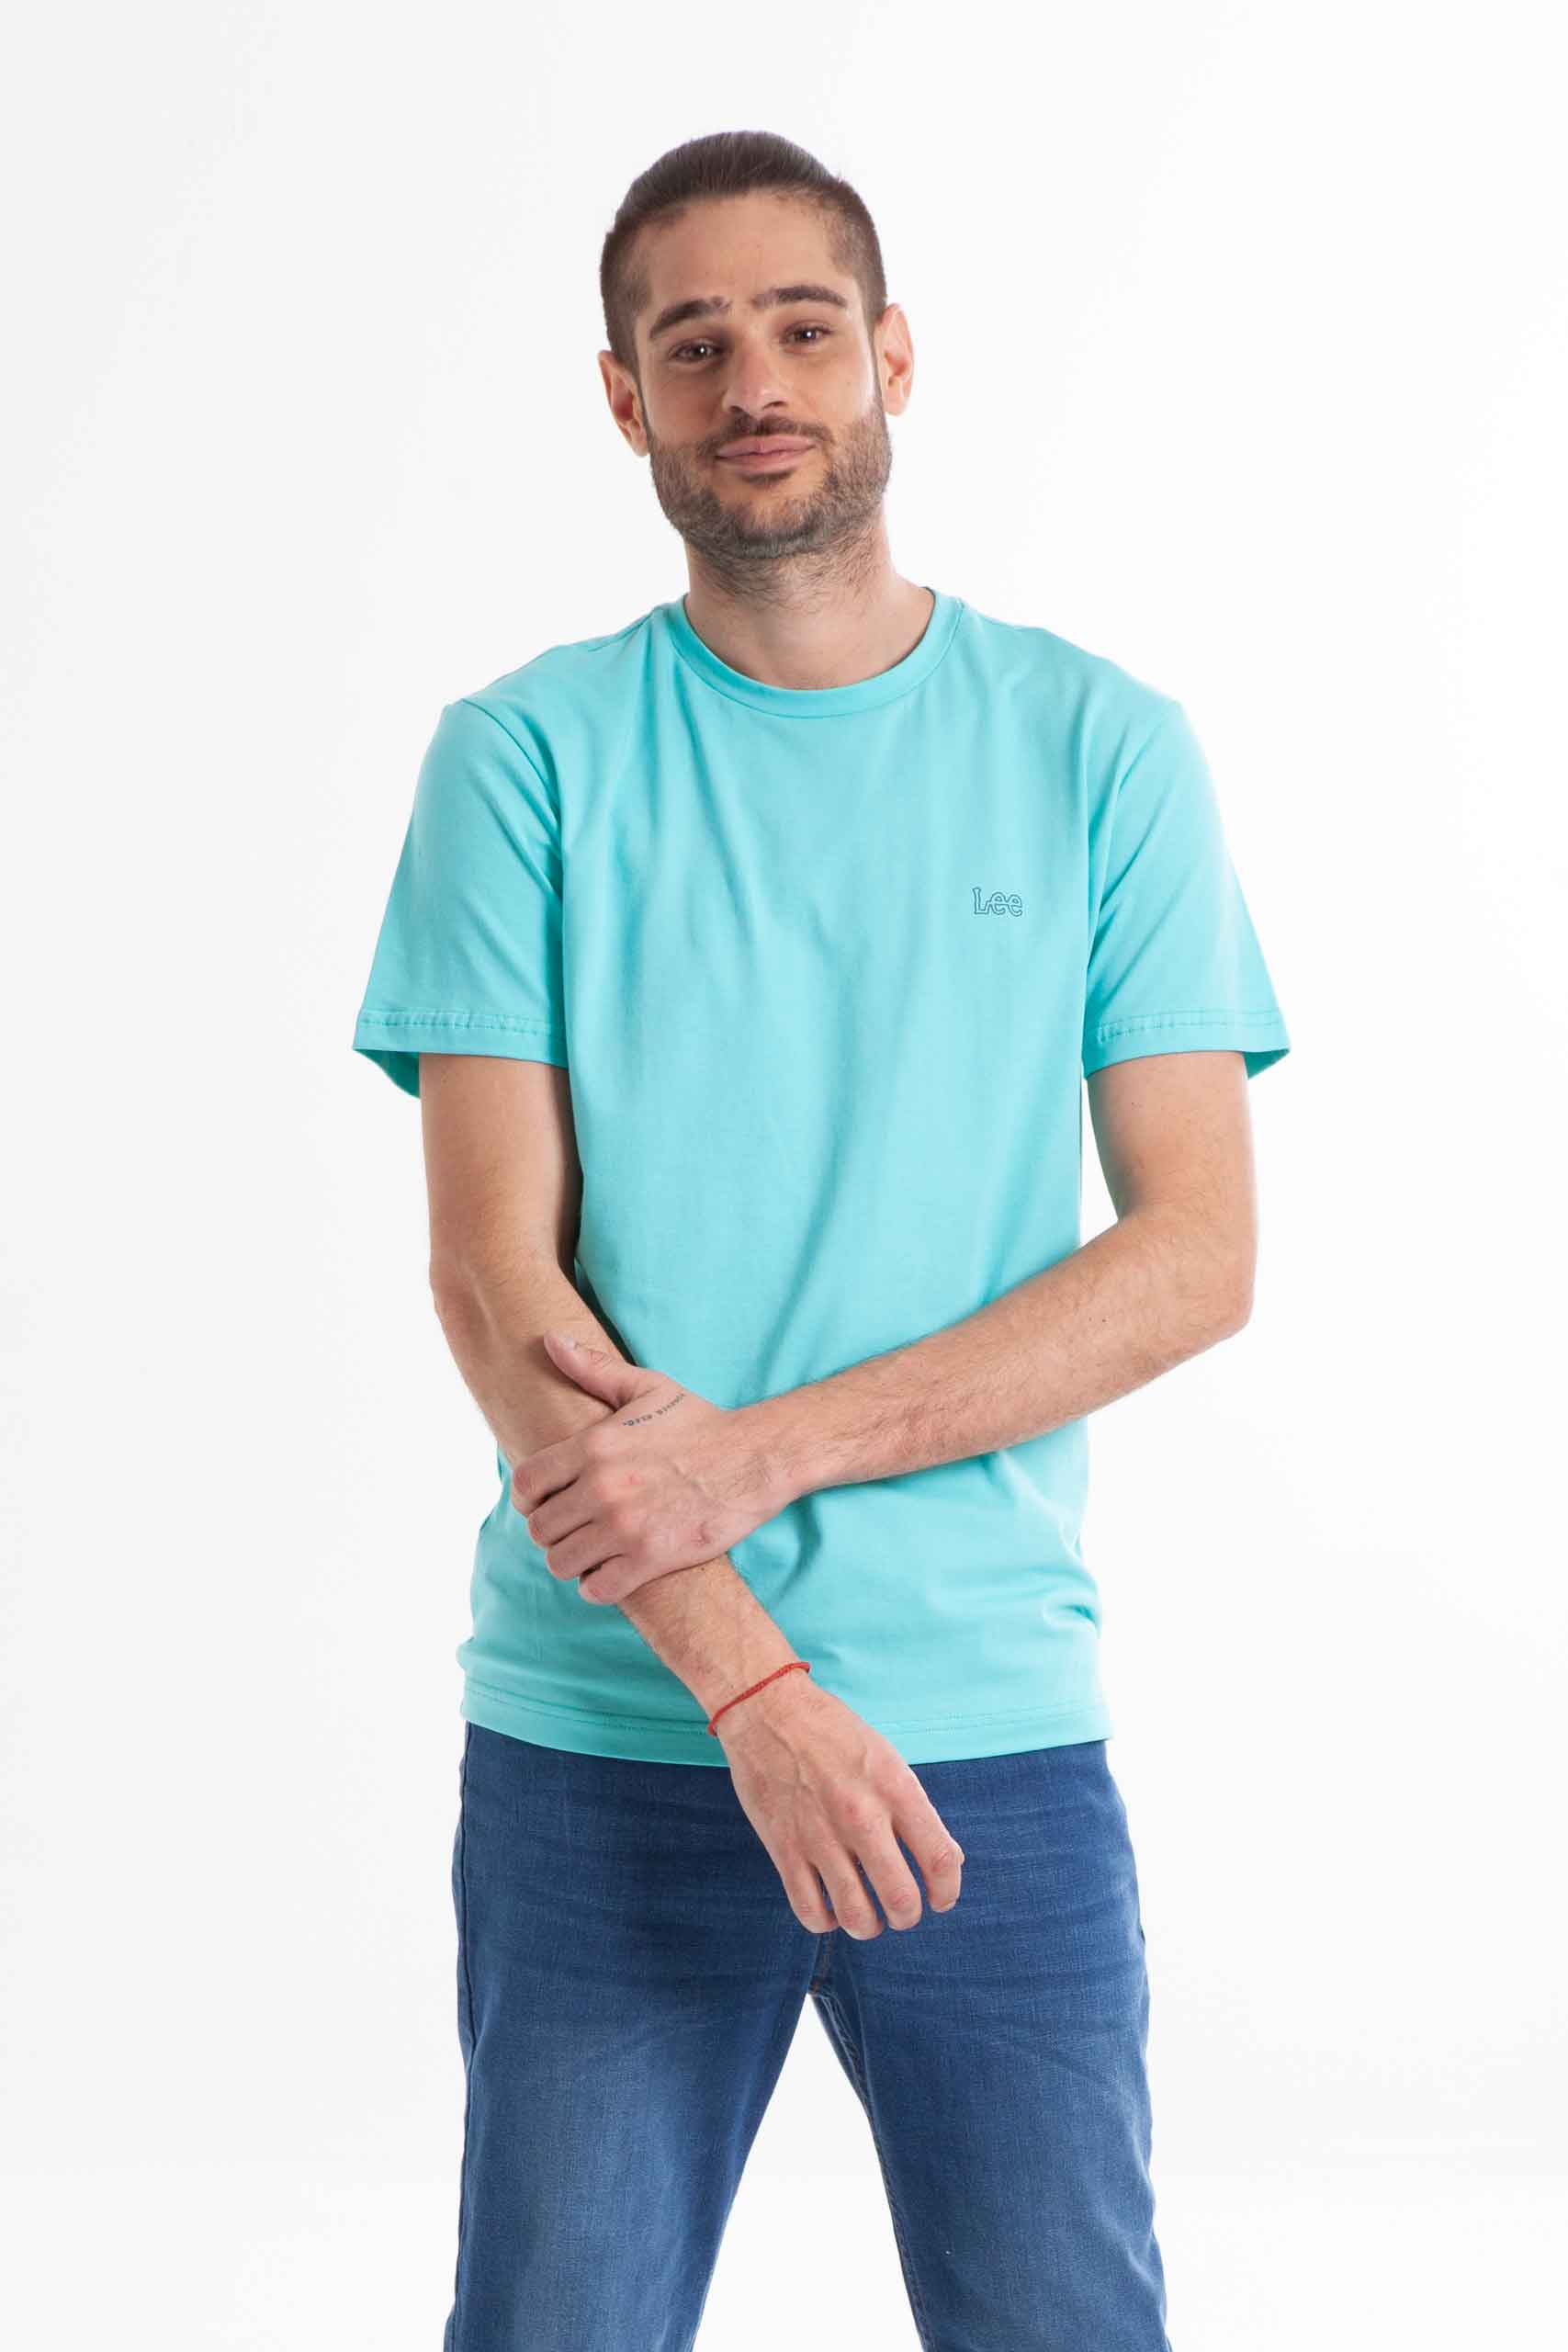 Vista frontal de camiseta de color turquesa con logo de la marca lee